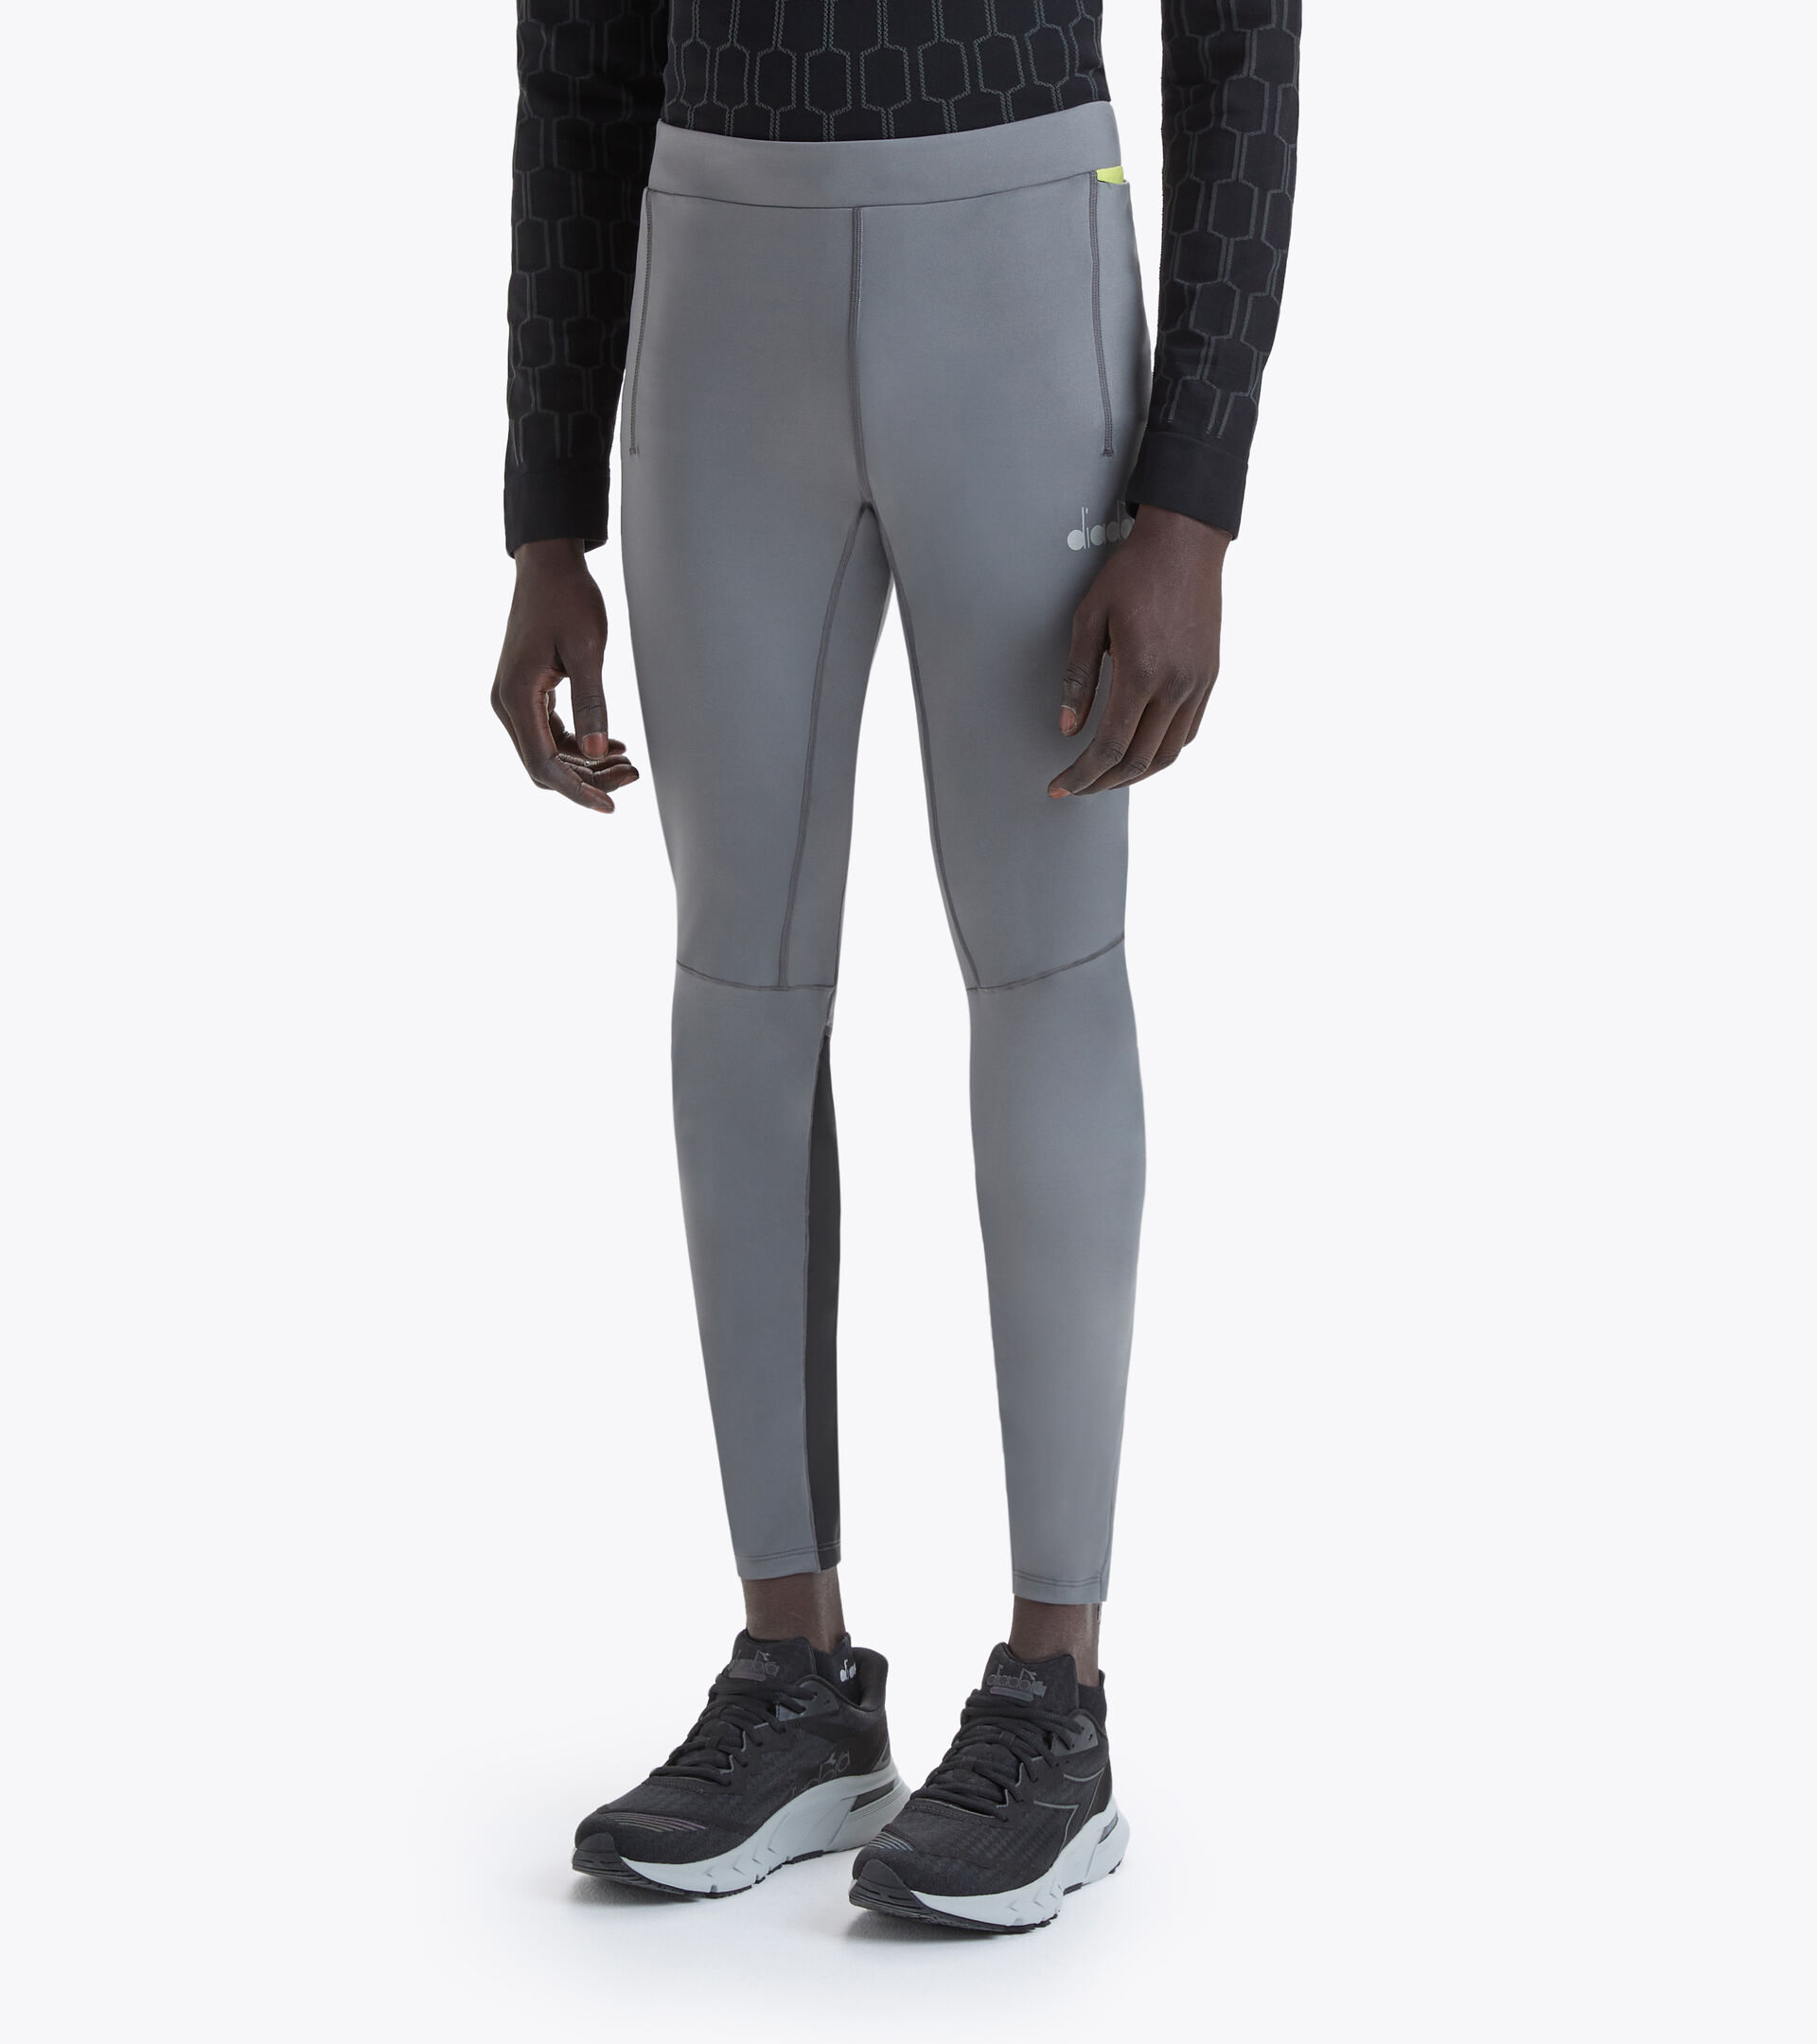 WINTER RUNNING TIGHTS BE ONE Running leggings - Men - Diadora Online Store  GR